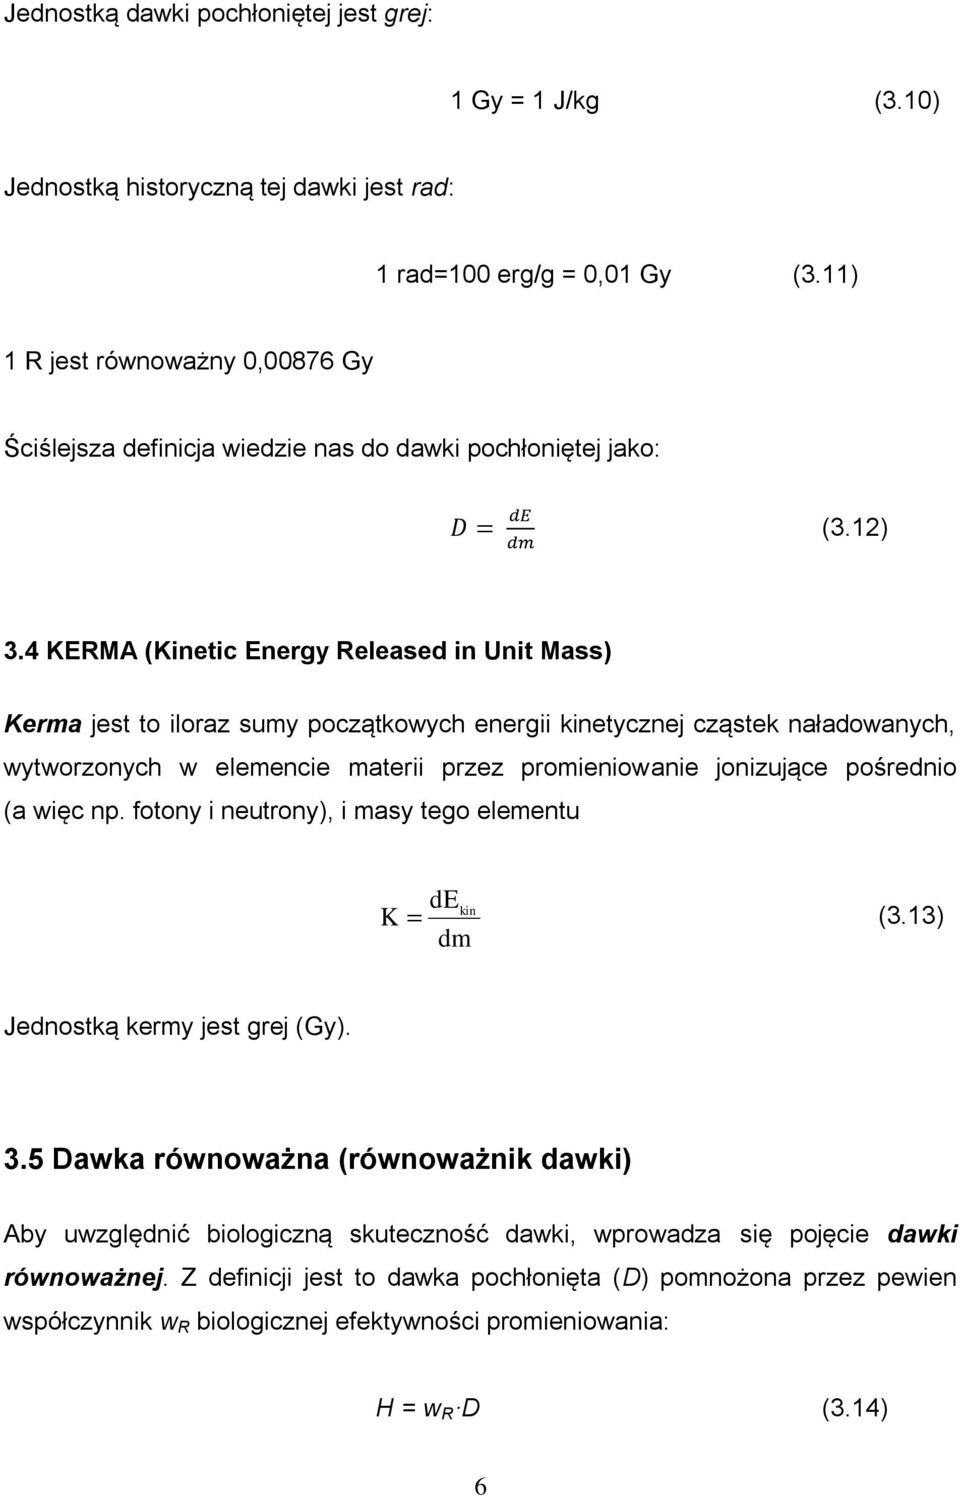 4 KERMA (Kinetic Energy Released in Unit Mass) Kerma jest to iloraz sumy początkowych energii kinetycznej cząstek naładowanych, wytworzonych w elemencie materii przez promieniowanie jonizujące